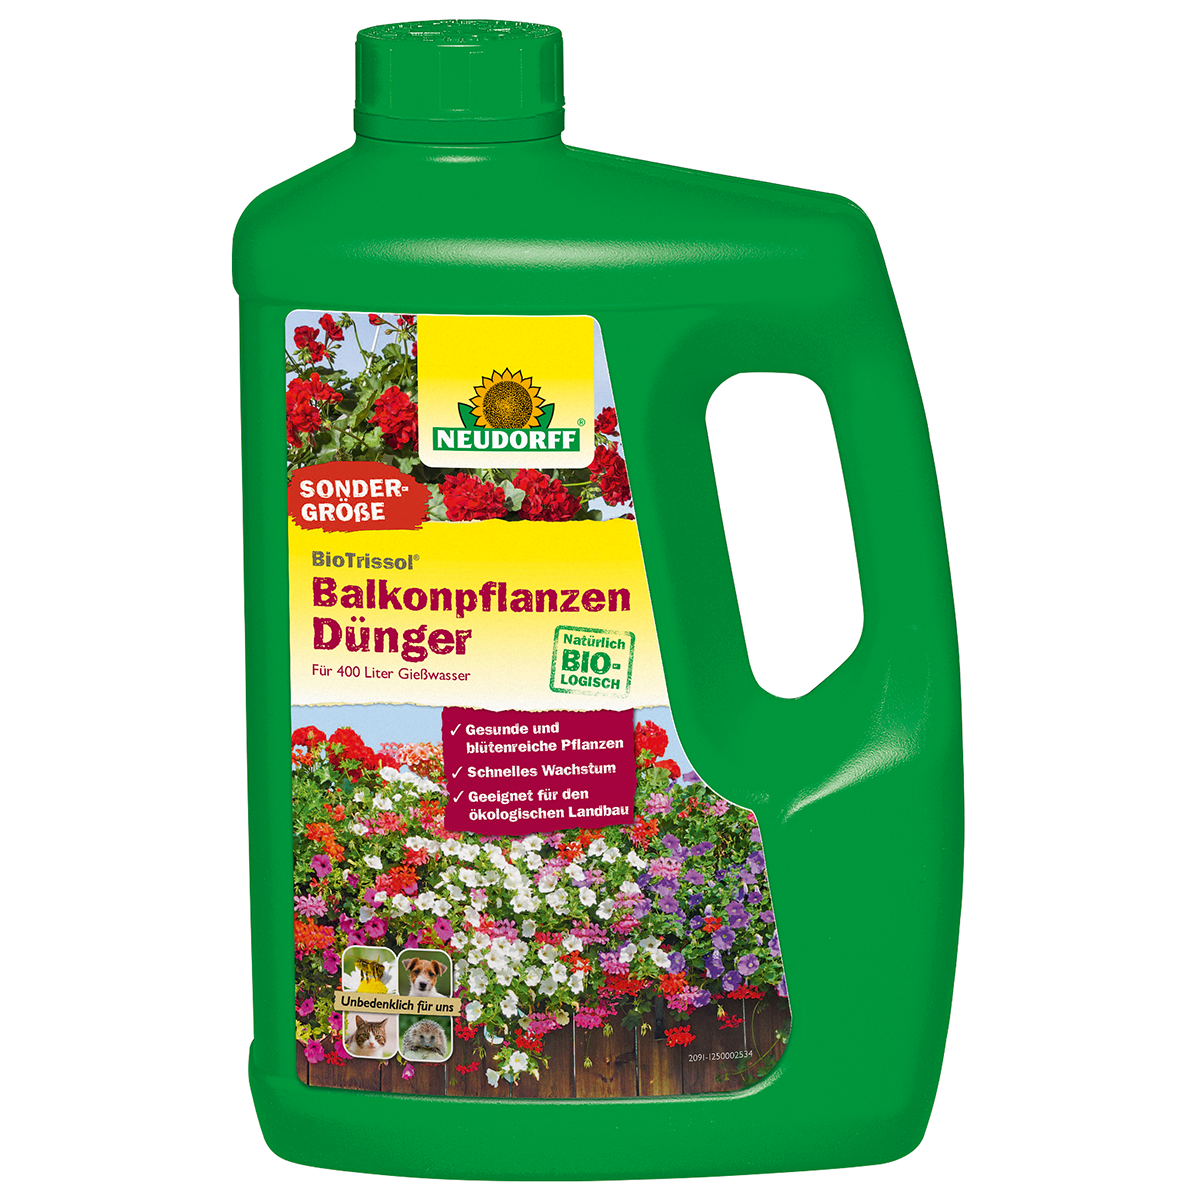 Neudorff BioTrissol BalkonpflanzenDünger, 2 L